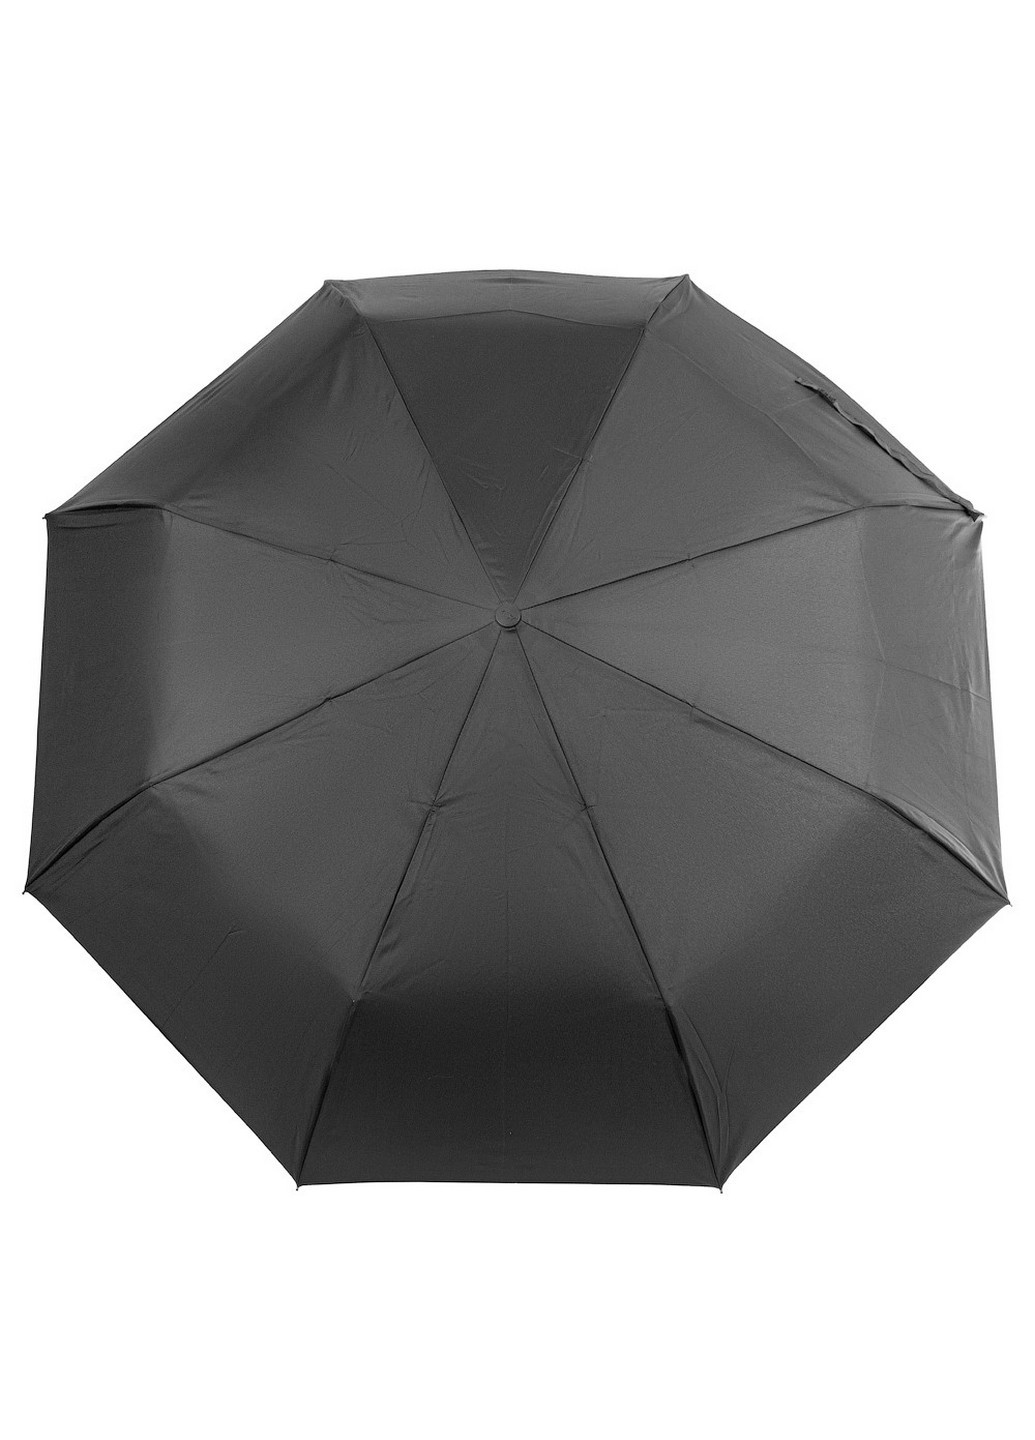 Зонт мужской полуавтомат 100 см Zest (255406034)